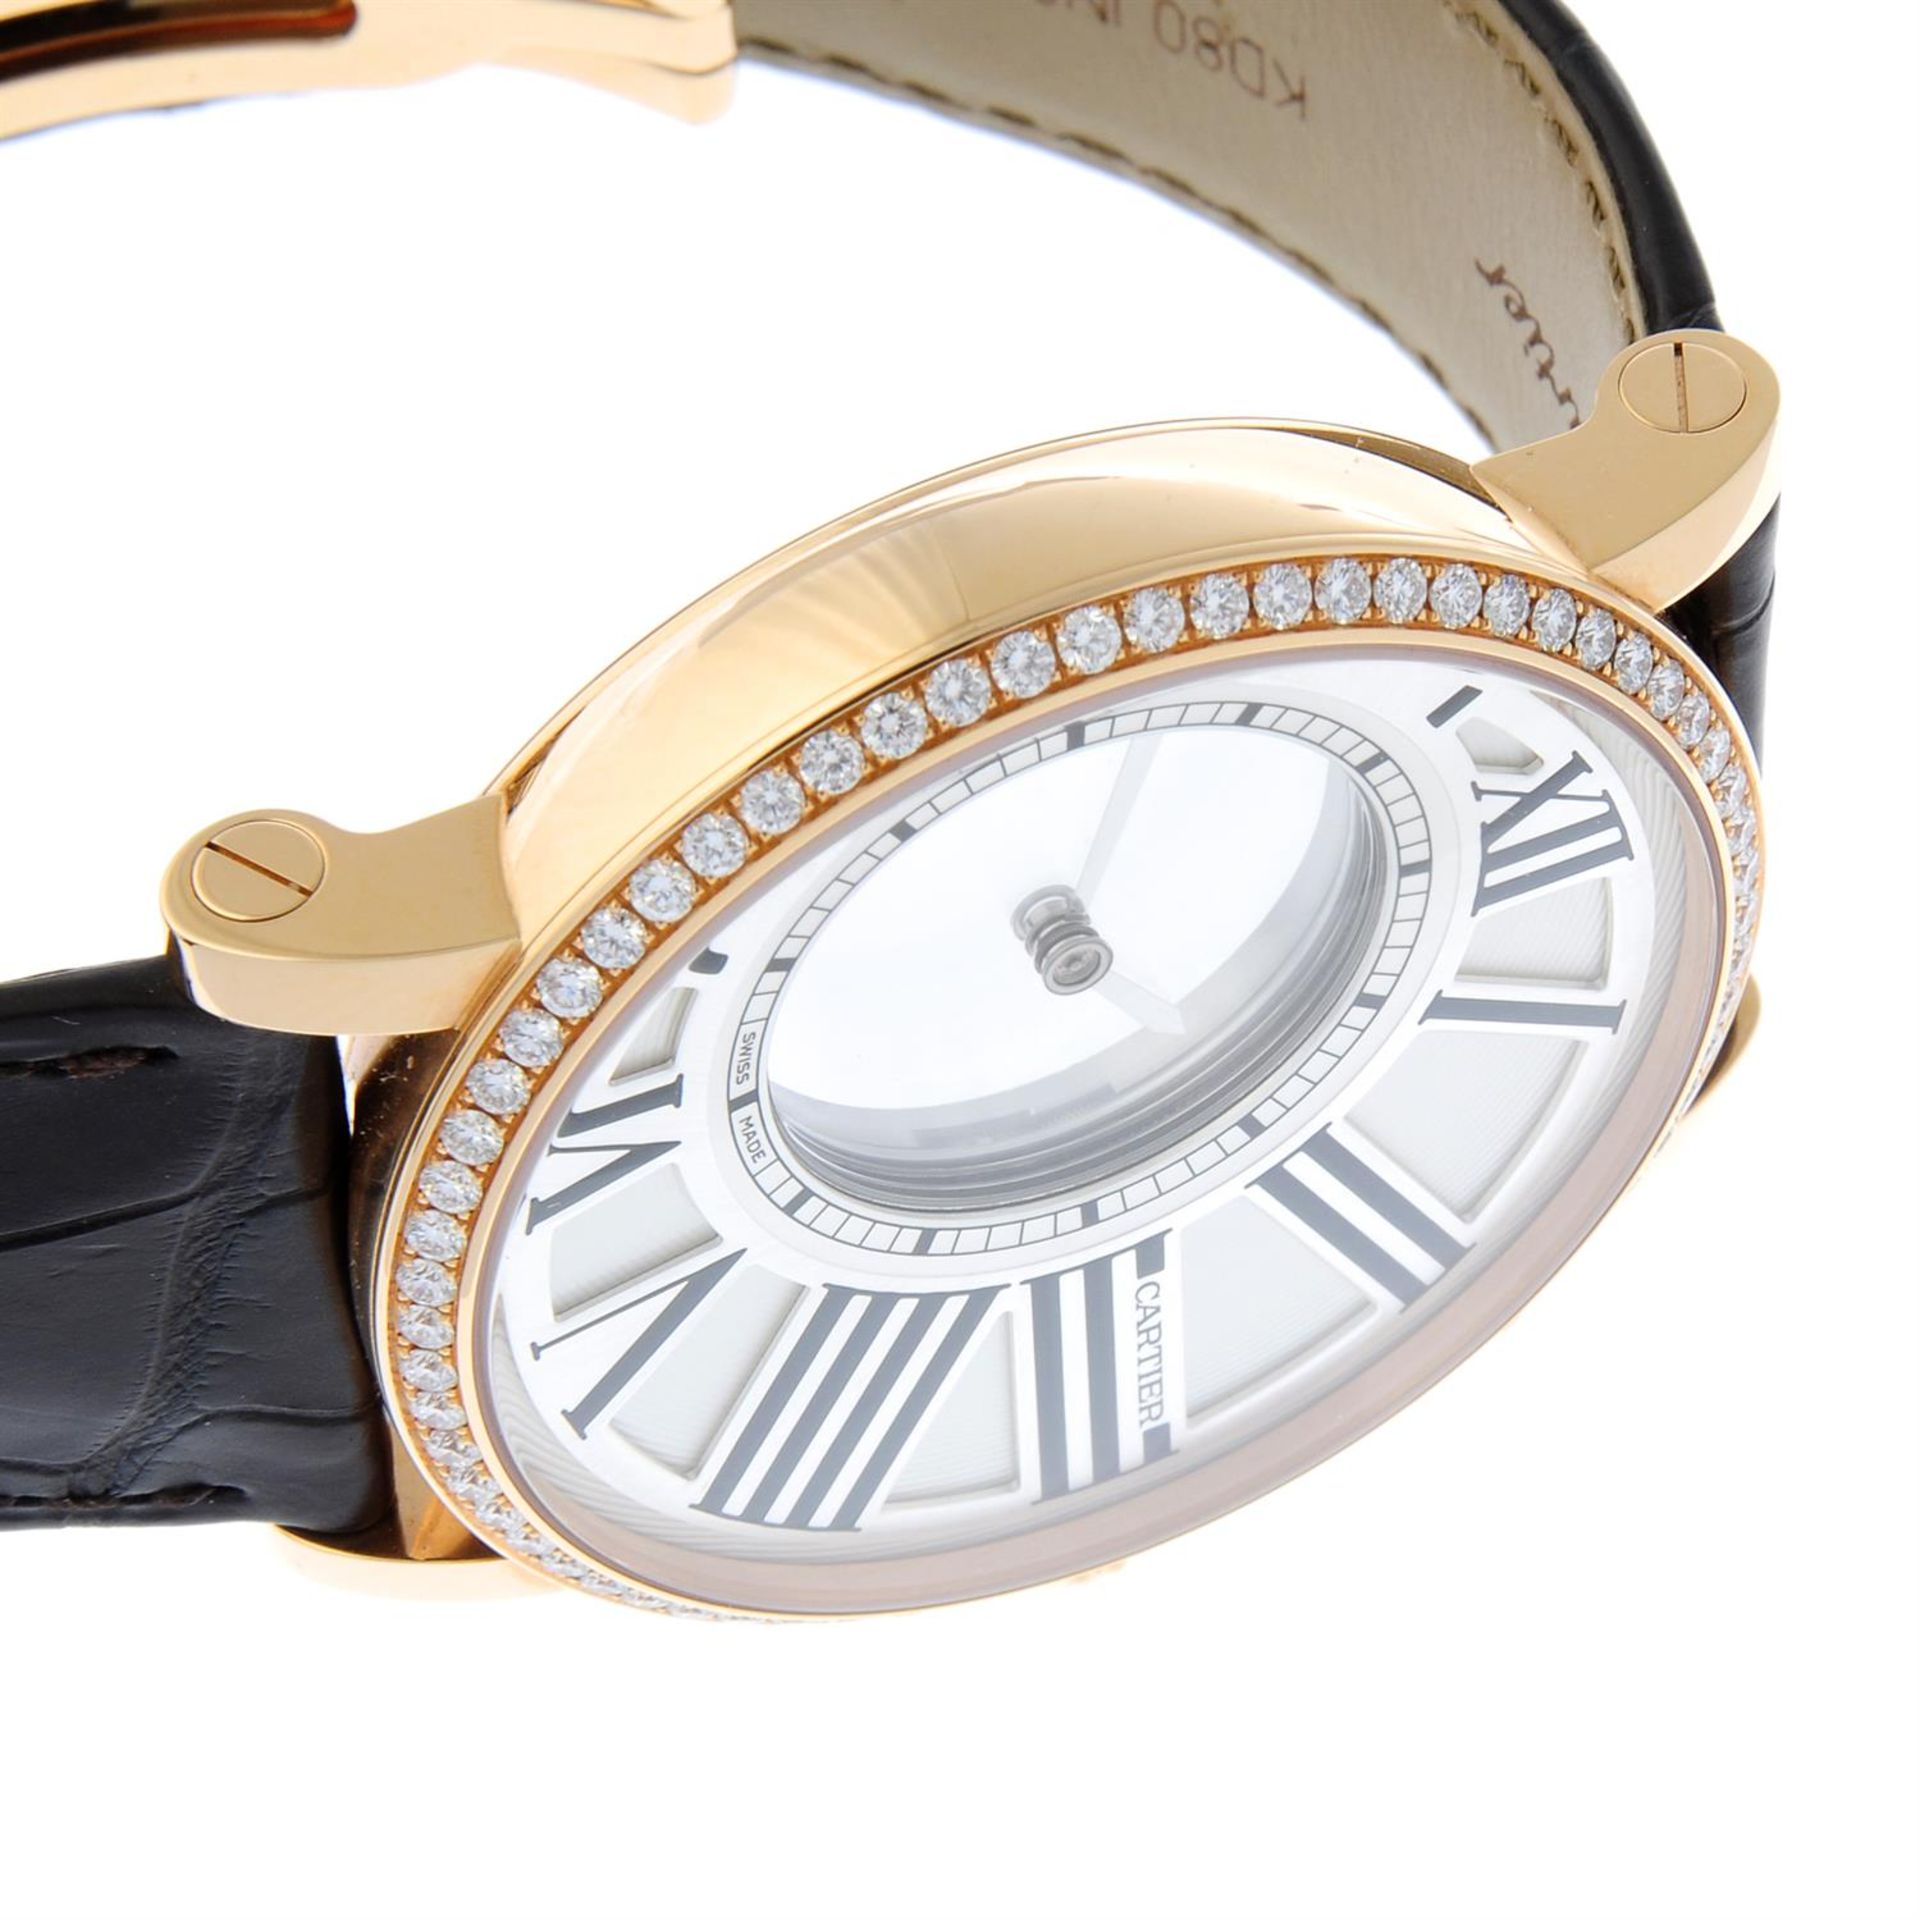 CARTIER - an 18ct rose gold Rotonde de Cartier Mystérieuse wrist watch, 42mm. - Bild 4 aus 7